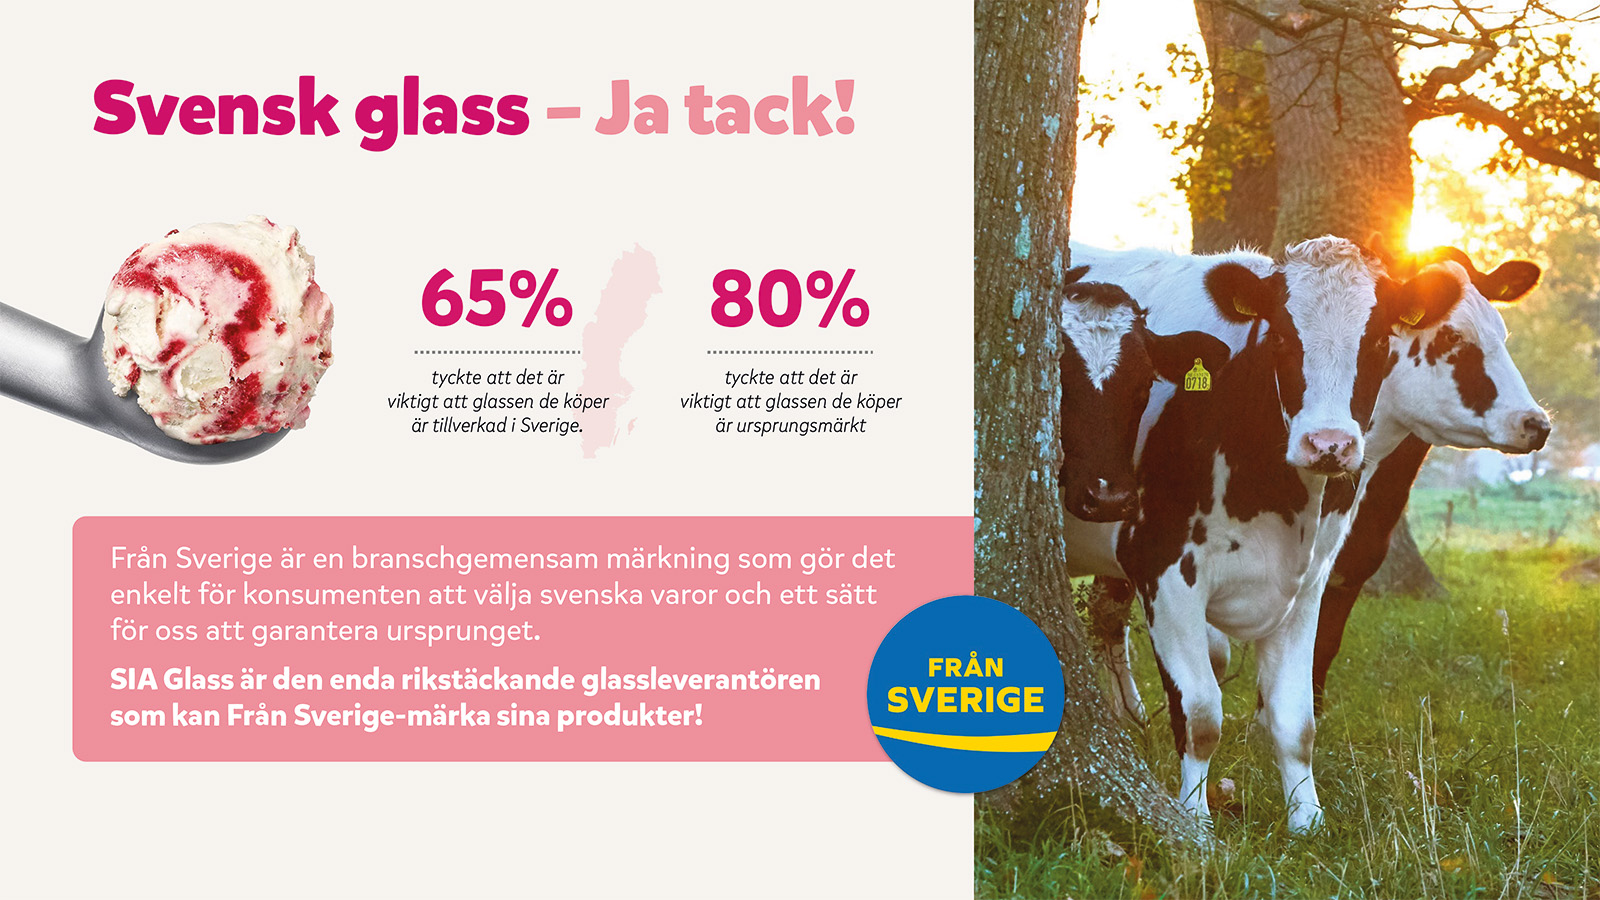 Enkätundersökning gjord av Kantar Sifo på uppdrag av SIA Glass genom webintervjuer utförda 18-19 okt 2023. 1 400 personer har intervjuats i Sverige.